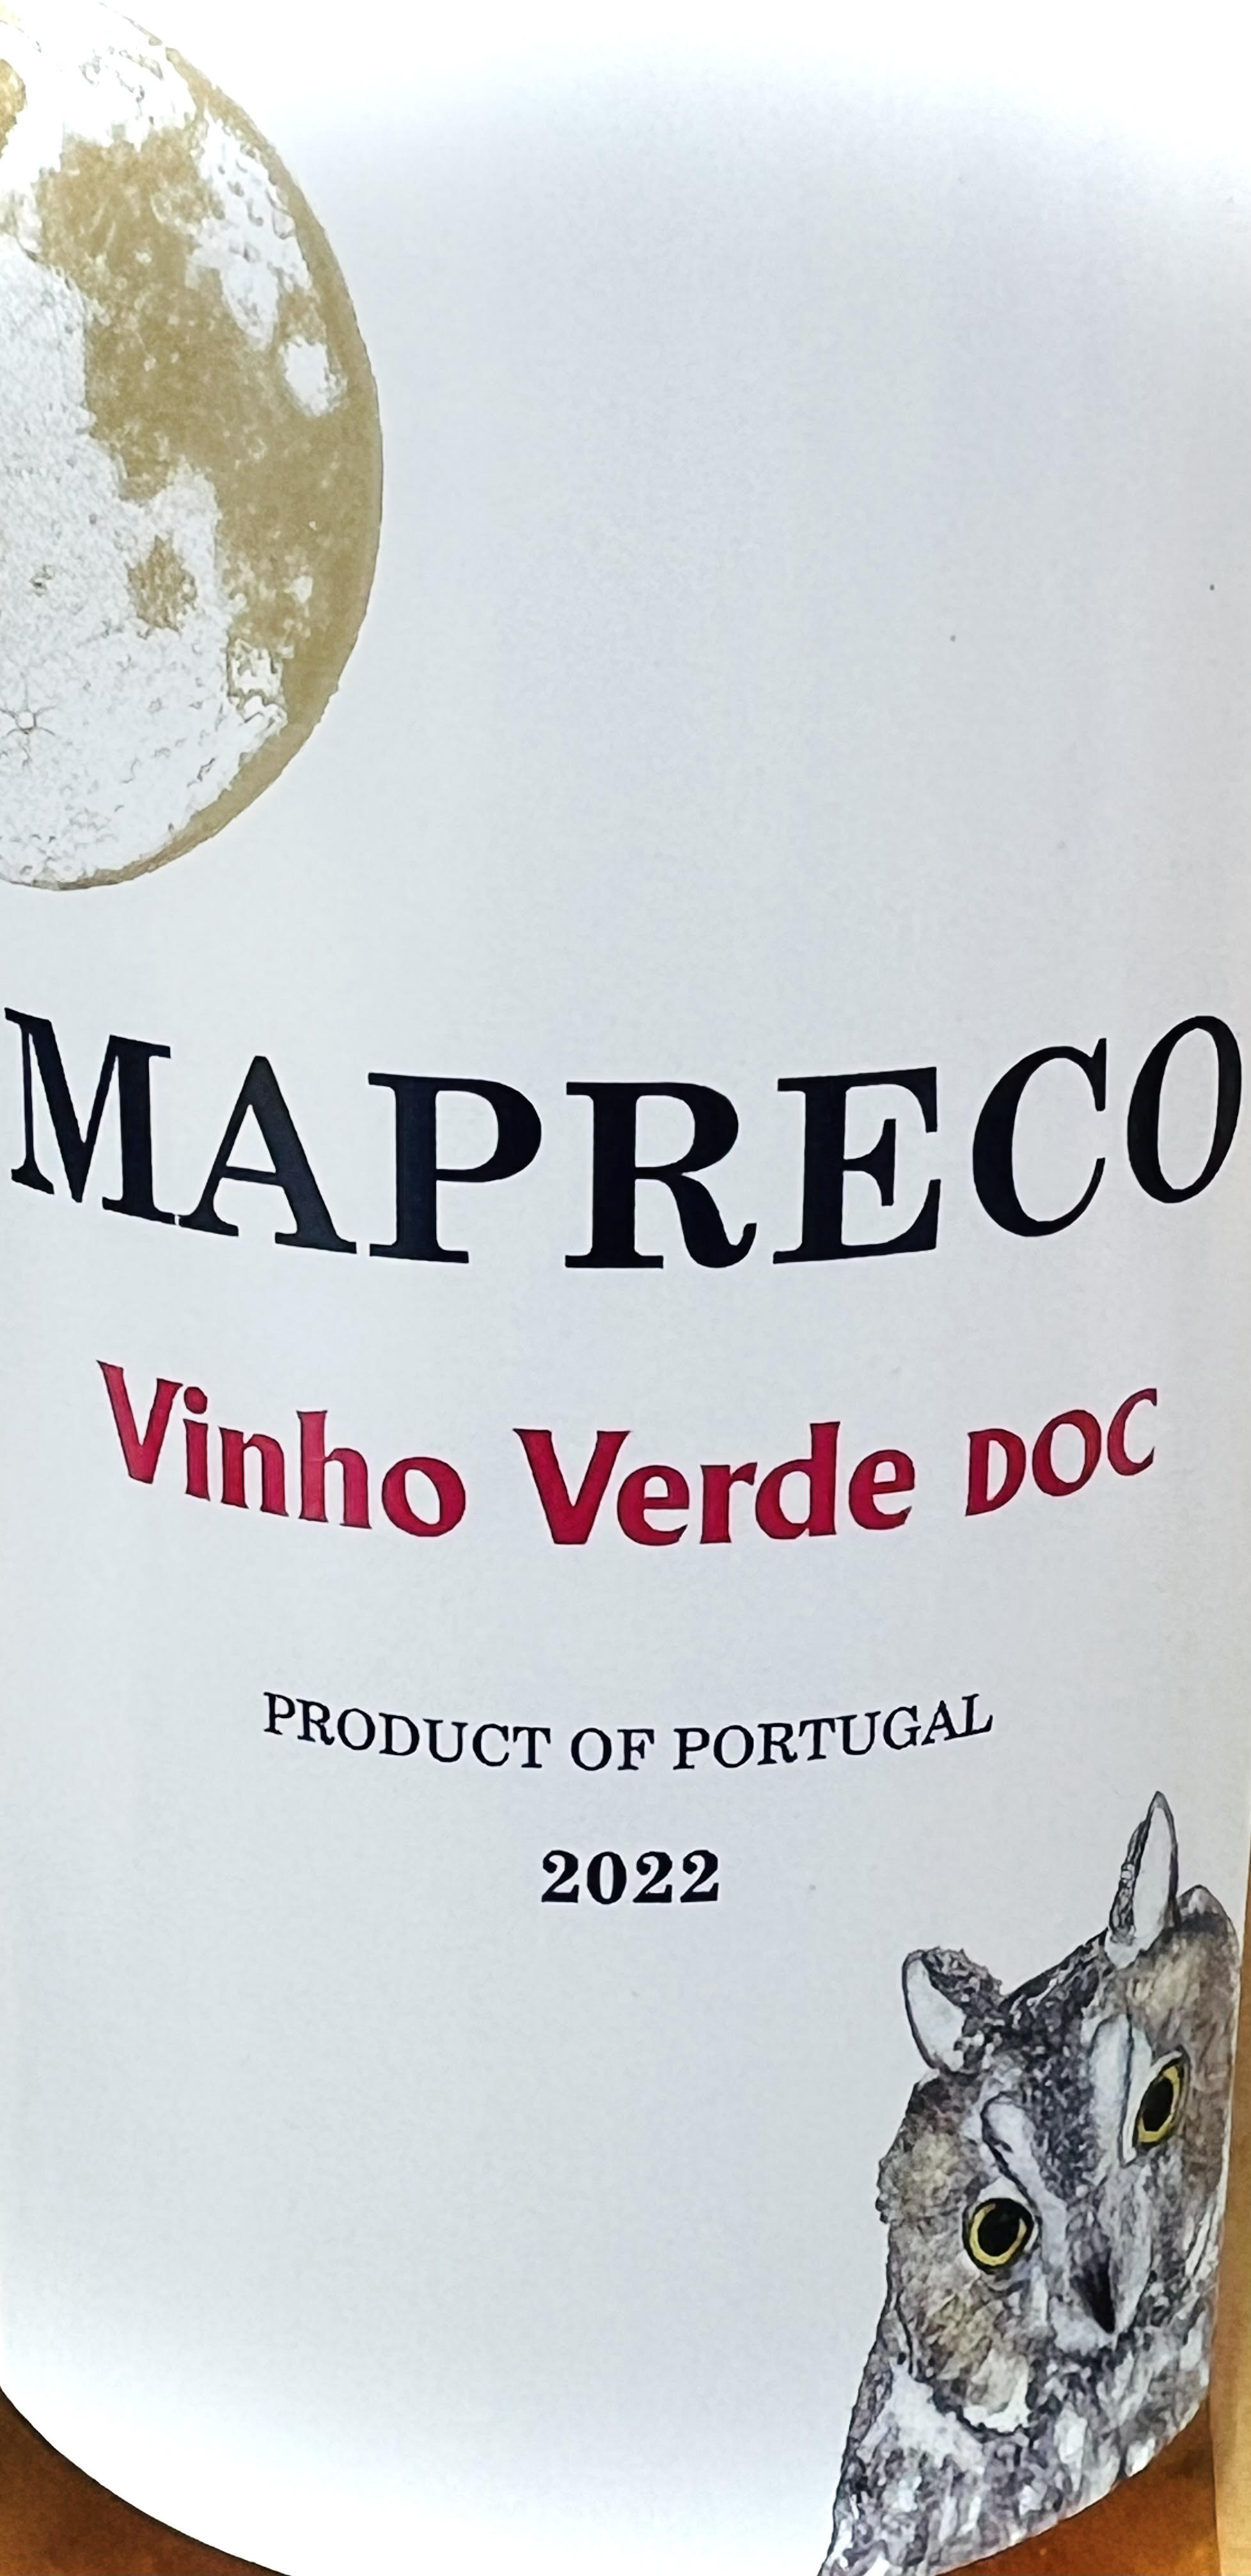 Mapreco Vinho Verde Rose 2022